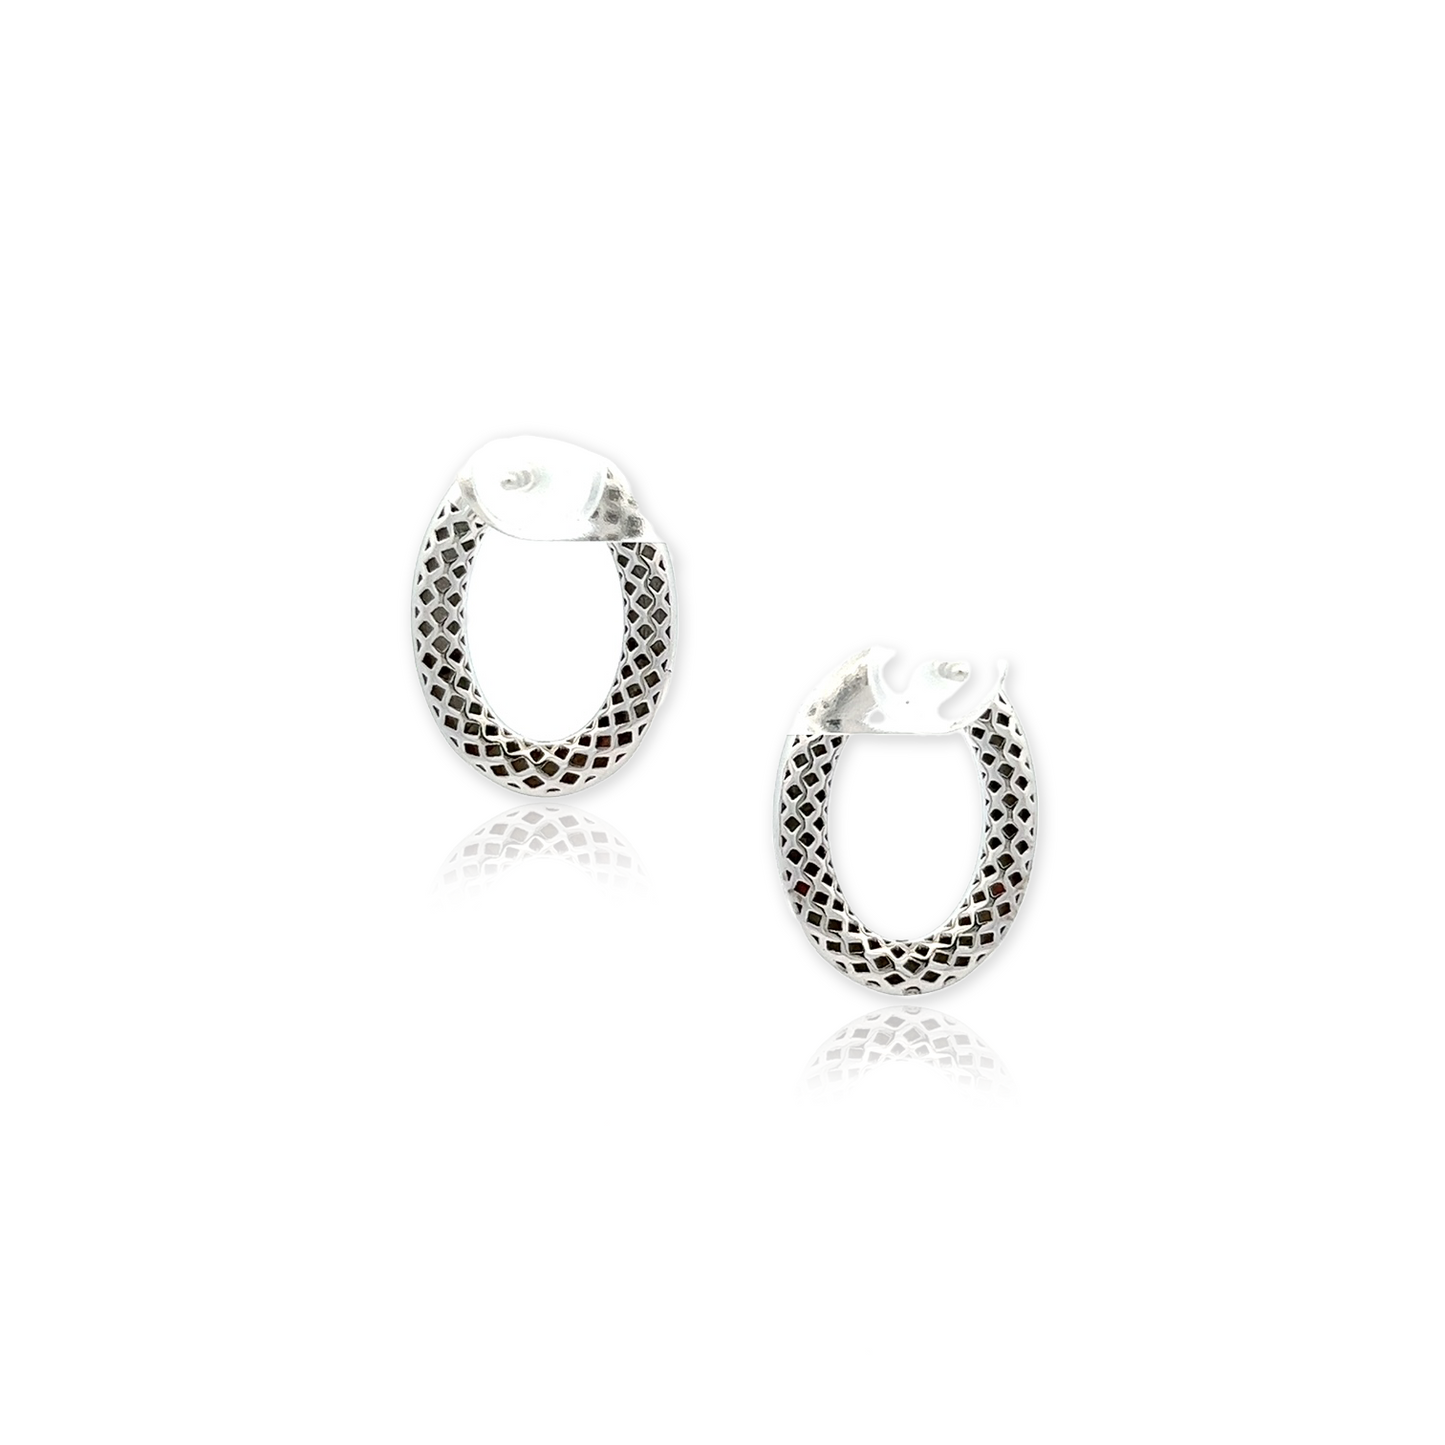 Elizabeth Earrings in Silver